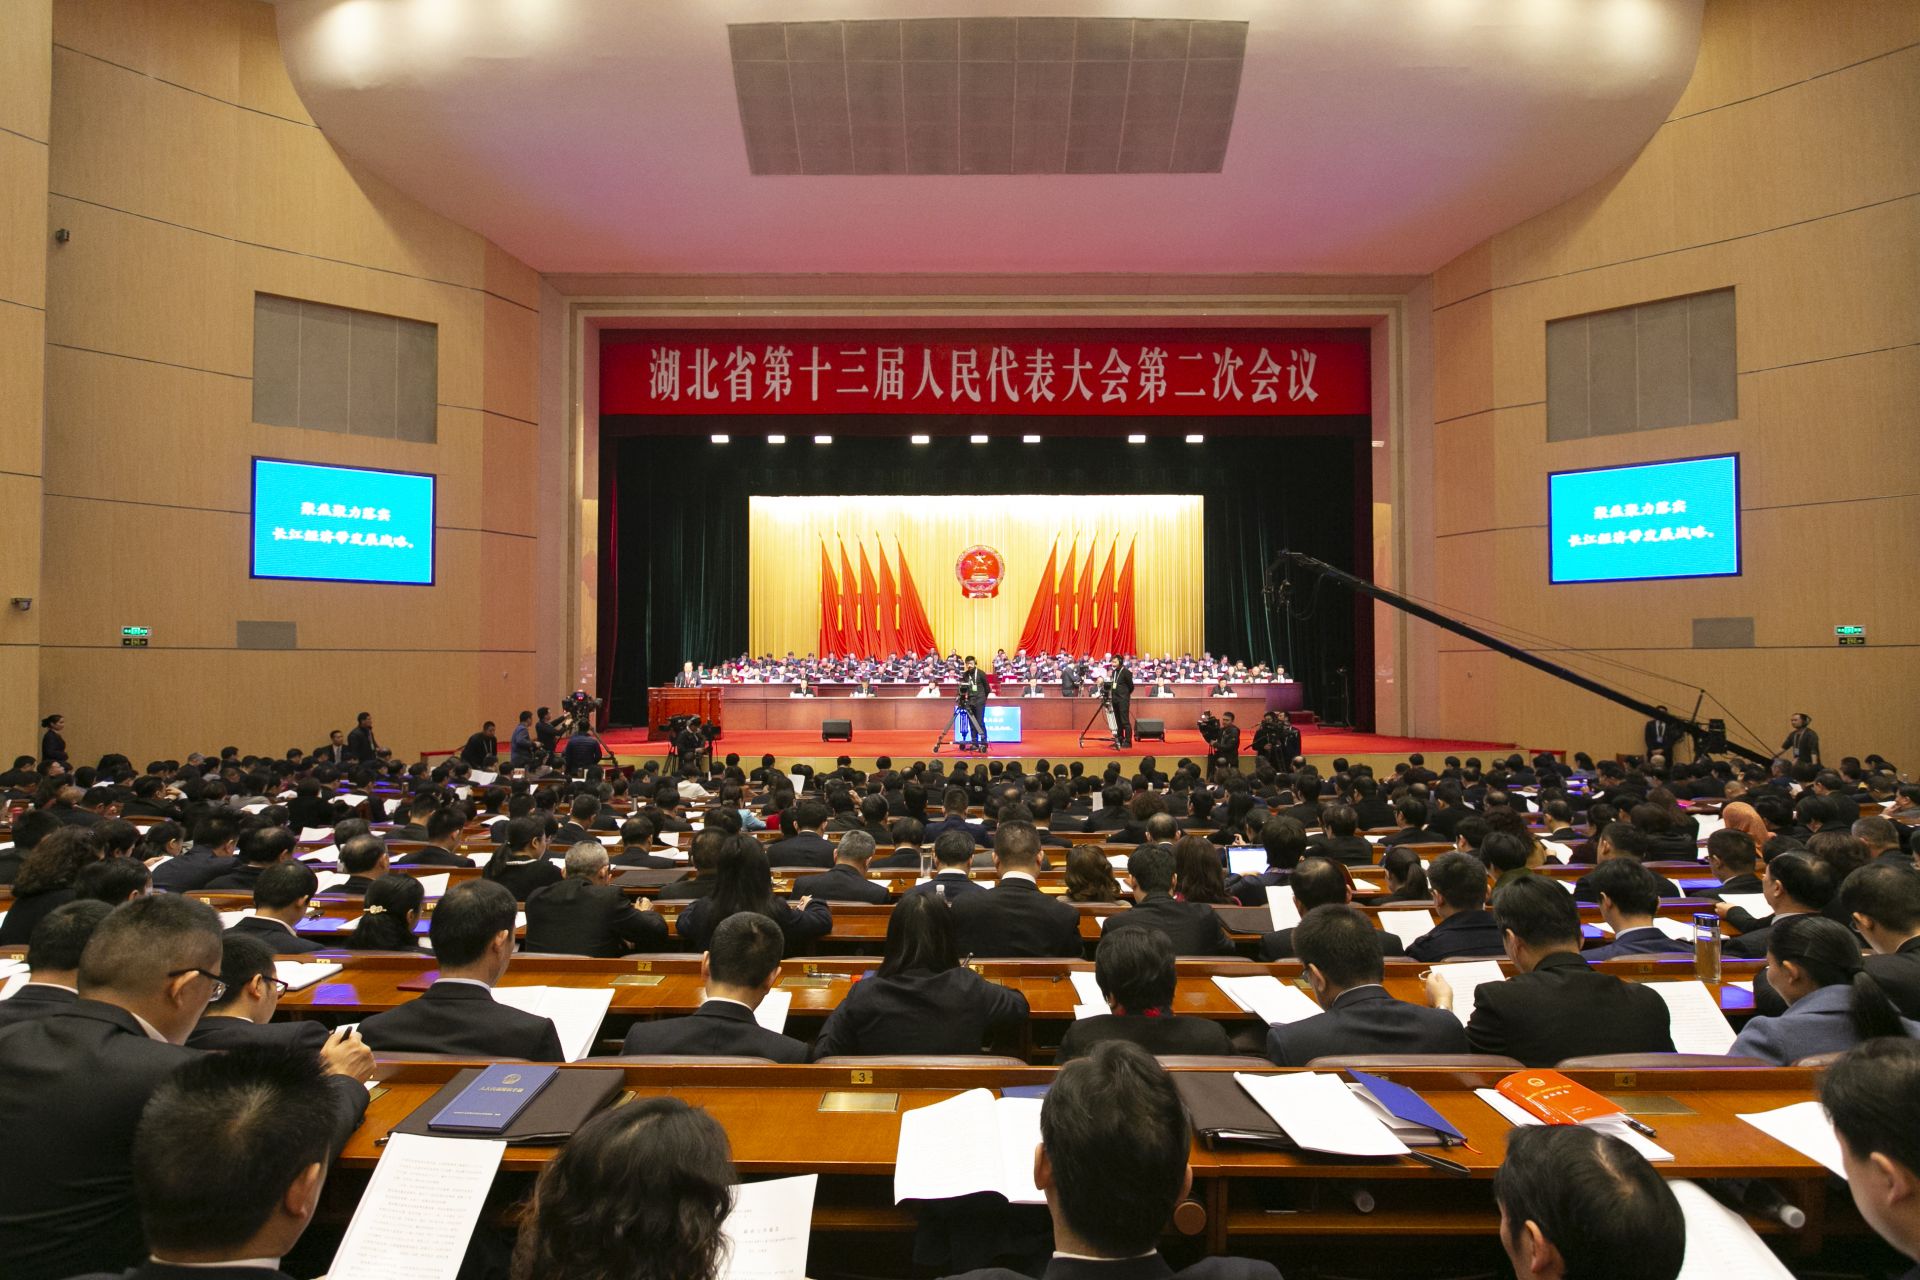 现场高清图：湖北省第十三届人民代表大会第二次会议开幕

